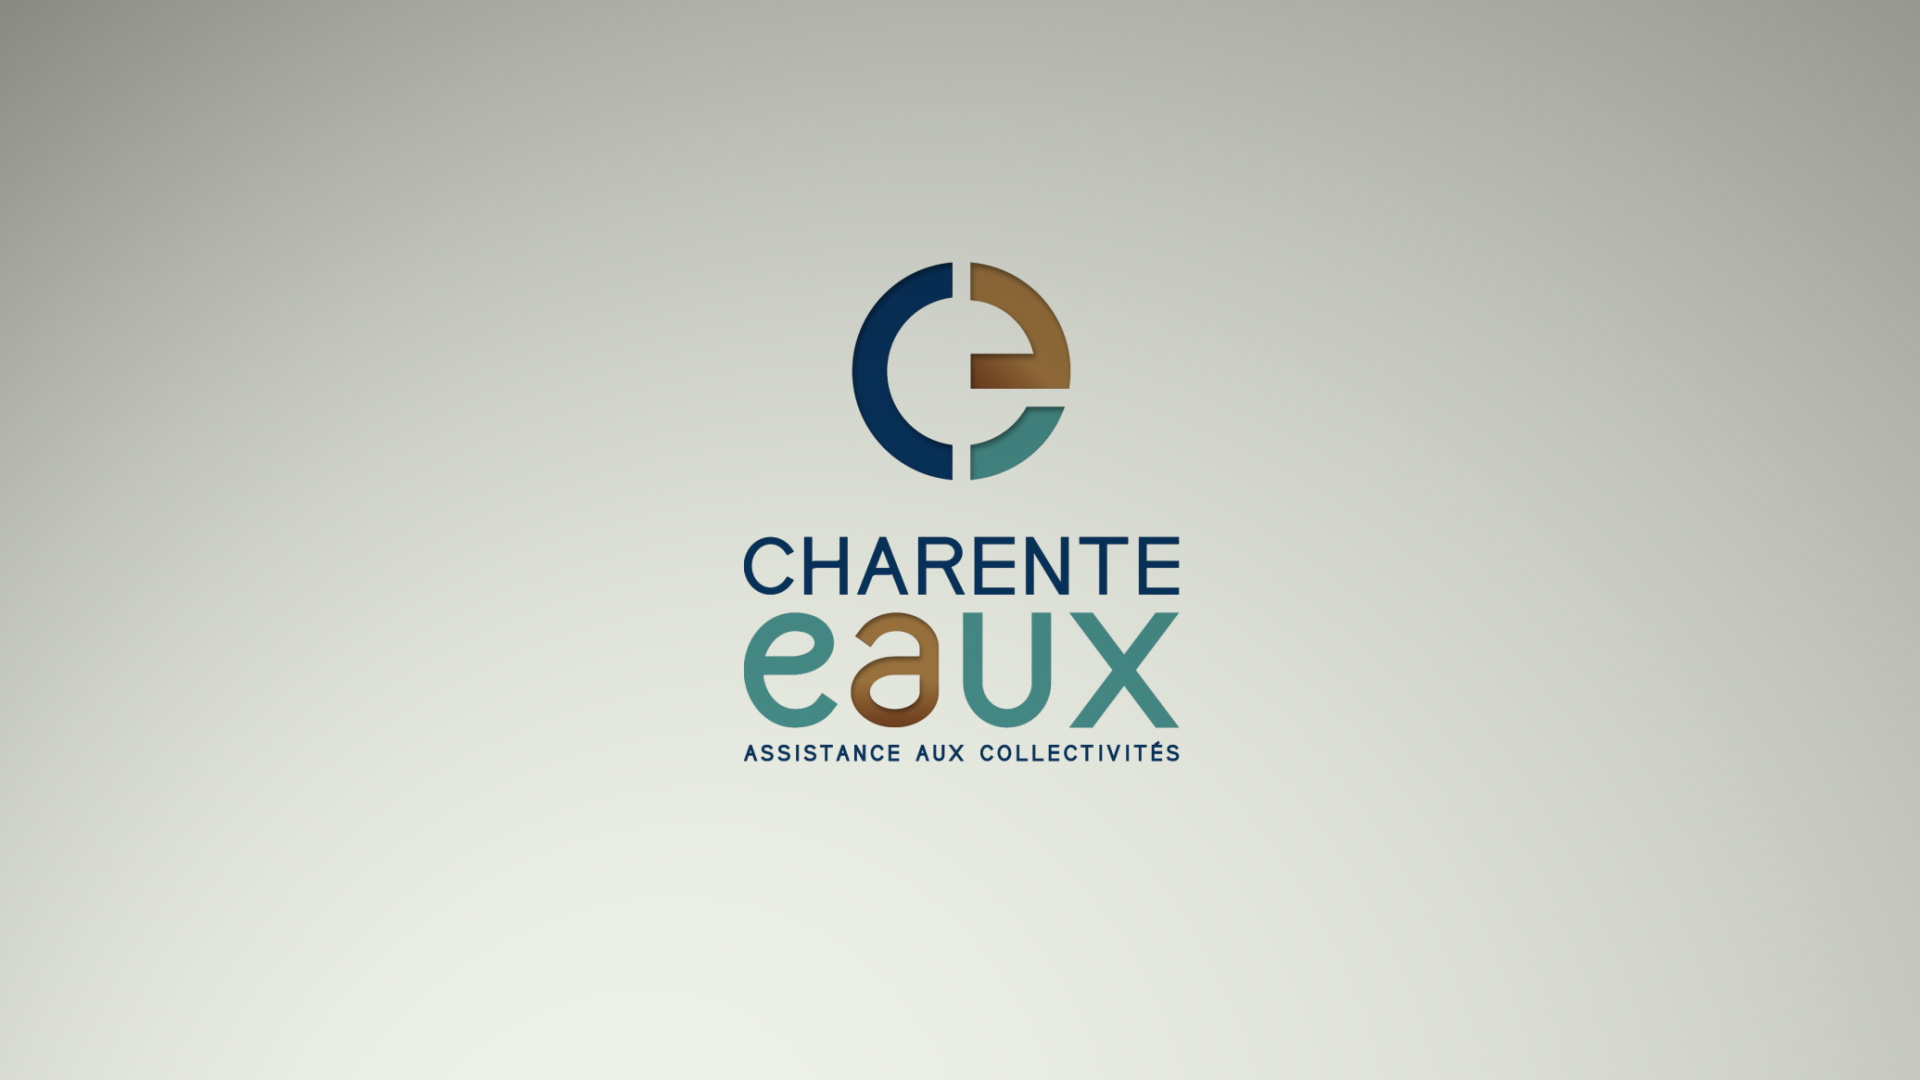 Charente Eaux